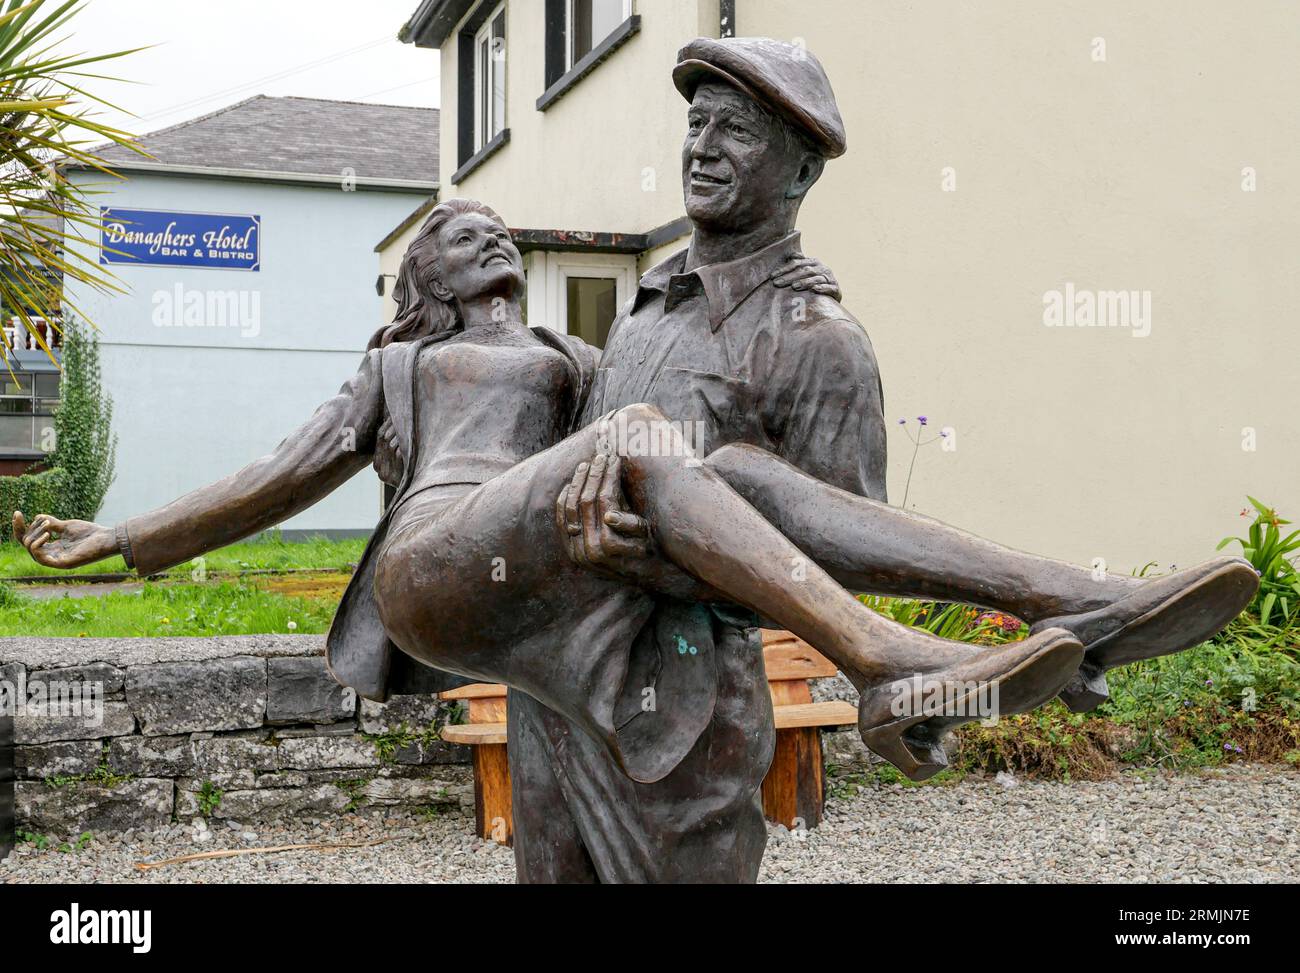 Irland, Cong, County Galway und County Mayo: Die Bronzestatue basiert auf dem Theaterplakat für den Film The Quiet man und zeigt John Wa Stockfoto